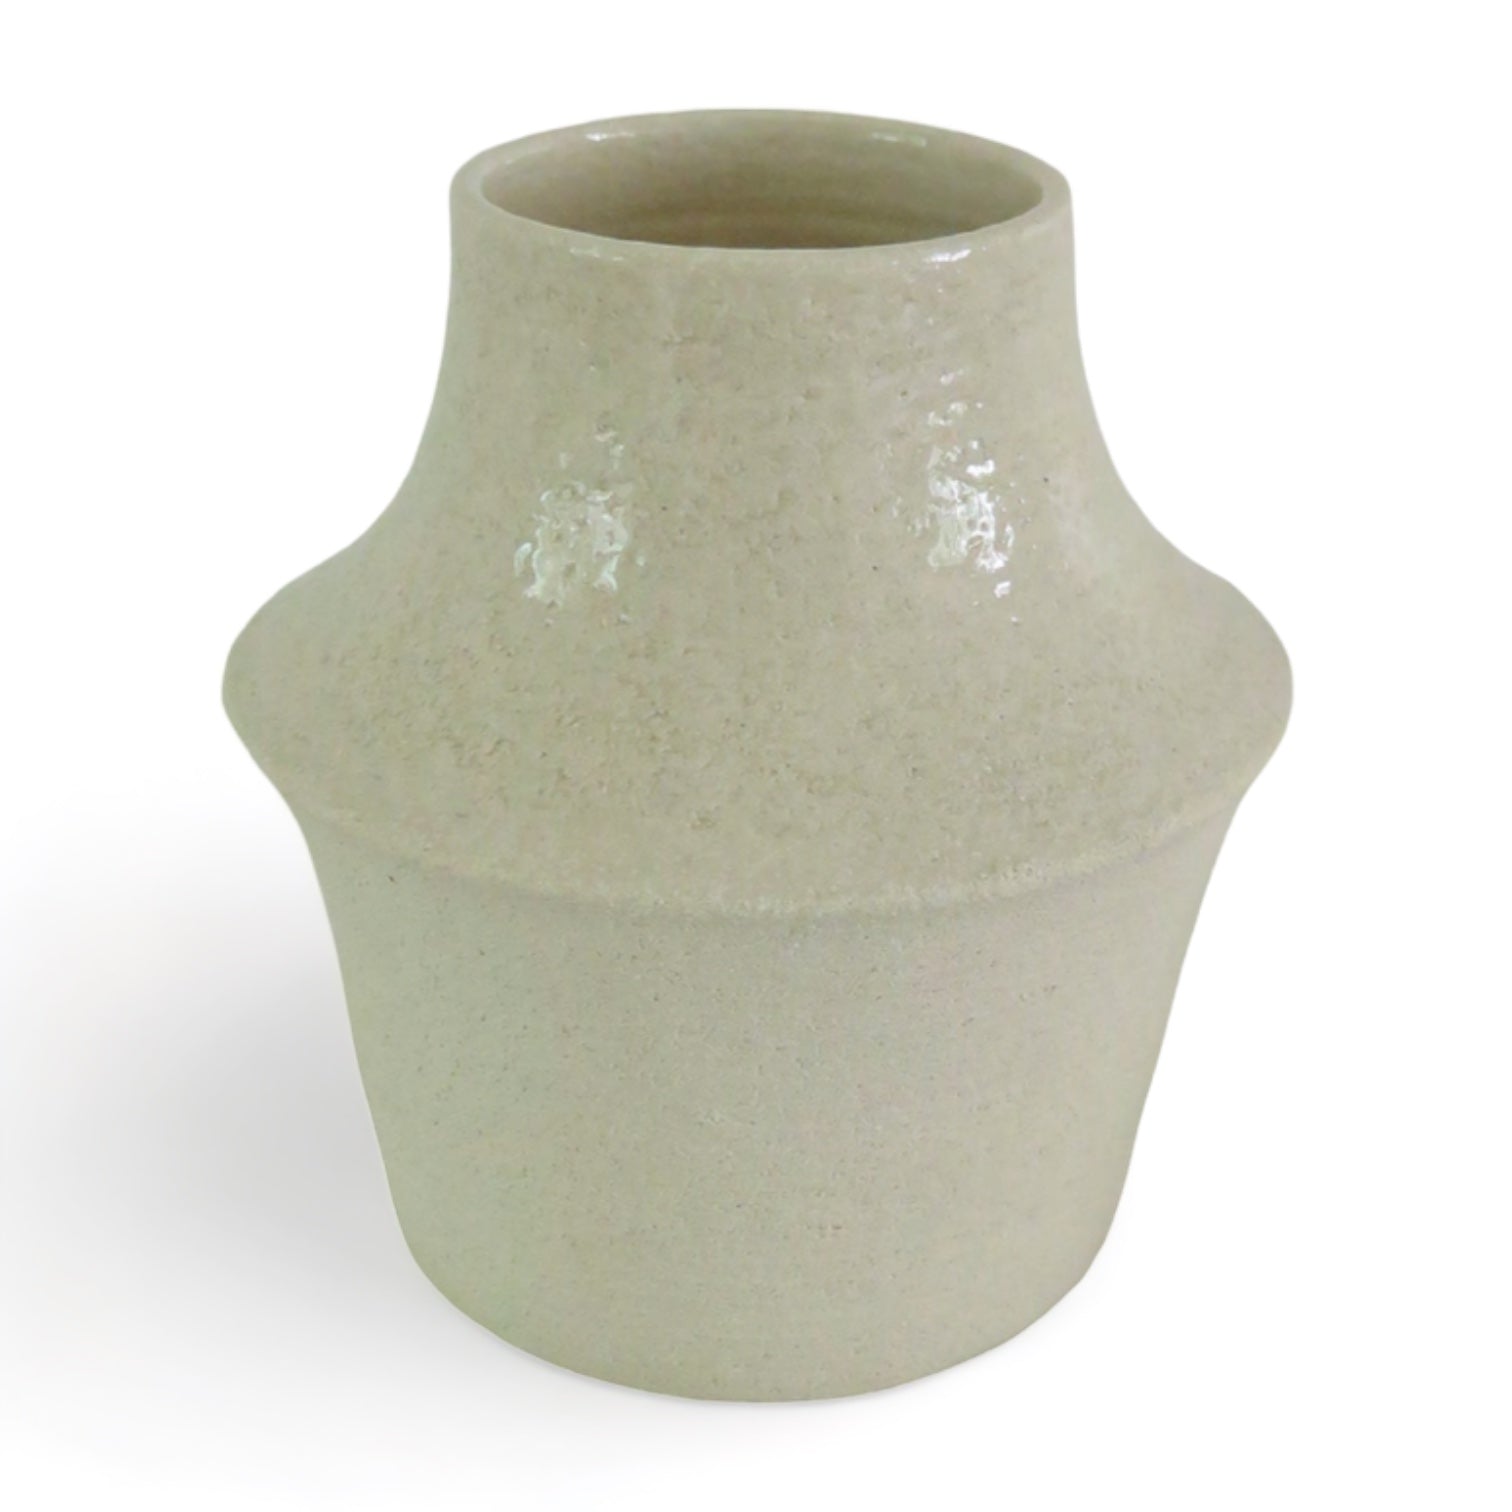 PII Ceramics - Vase Lampion (Blanc)